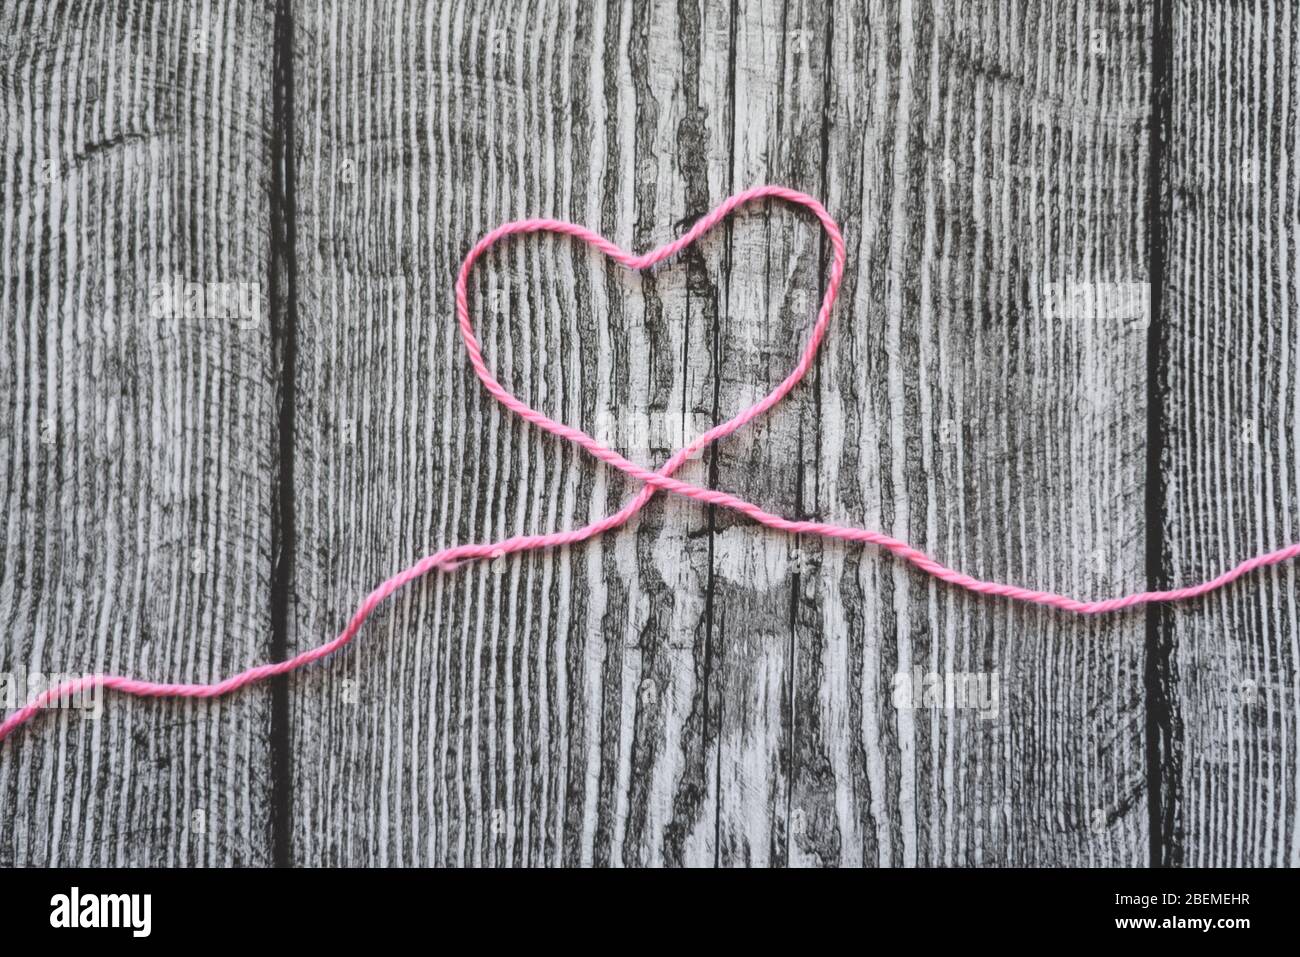 Un coeur en laine rose sur fond gris en bois. Banque D'Images